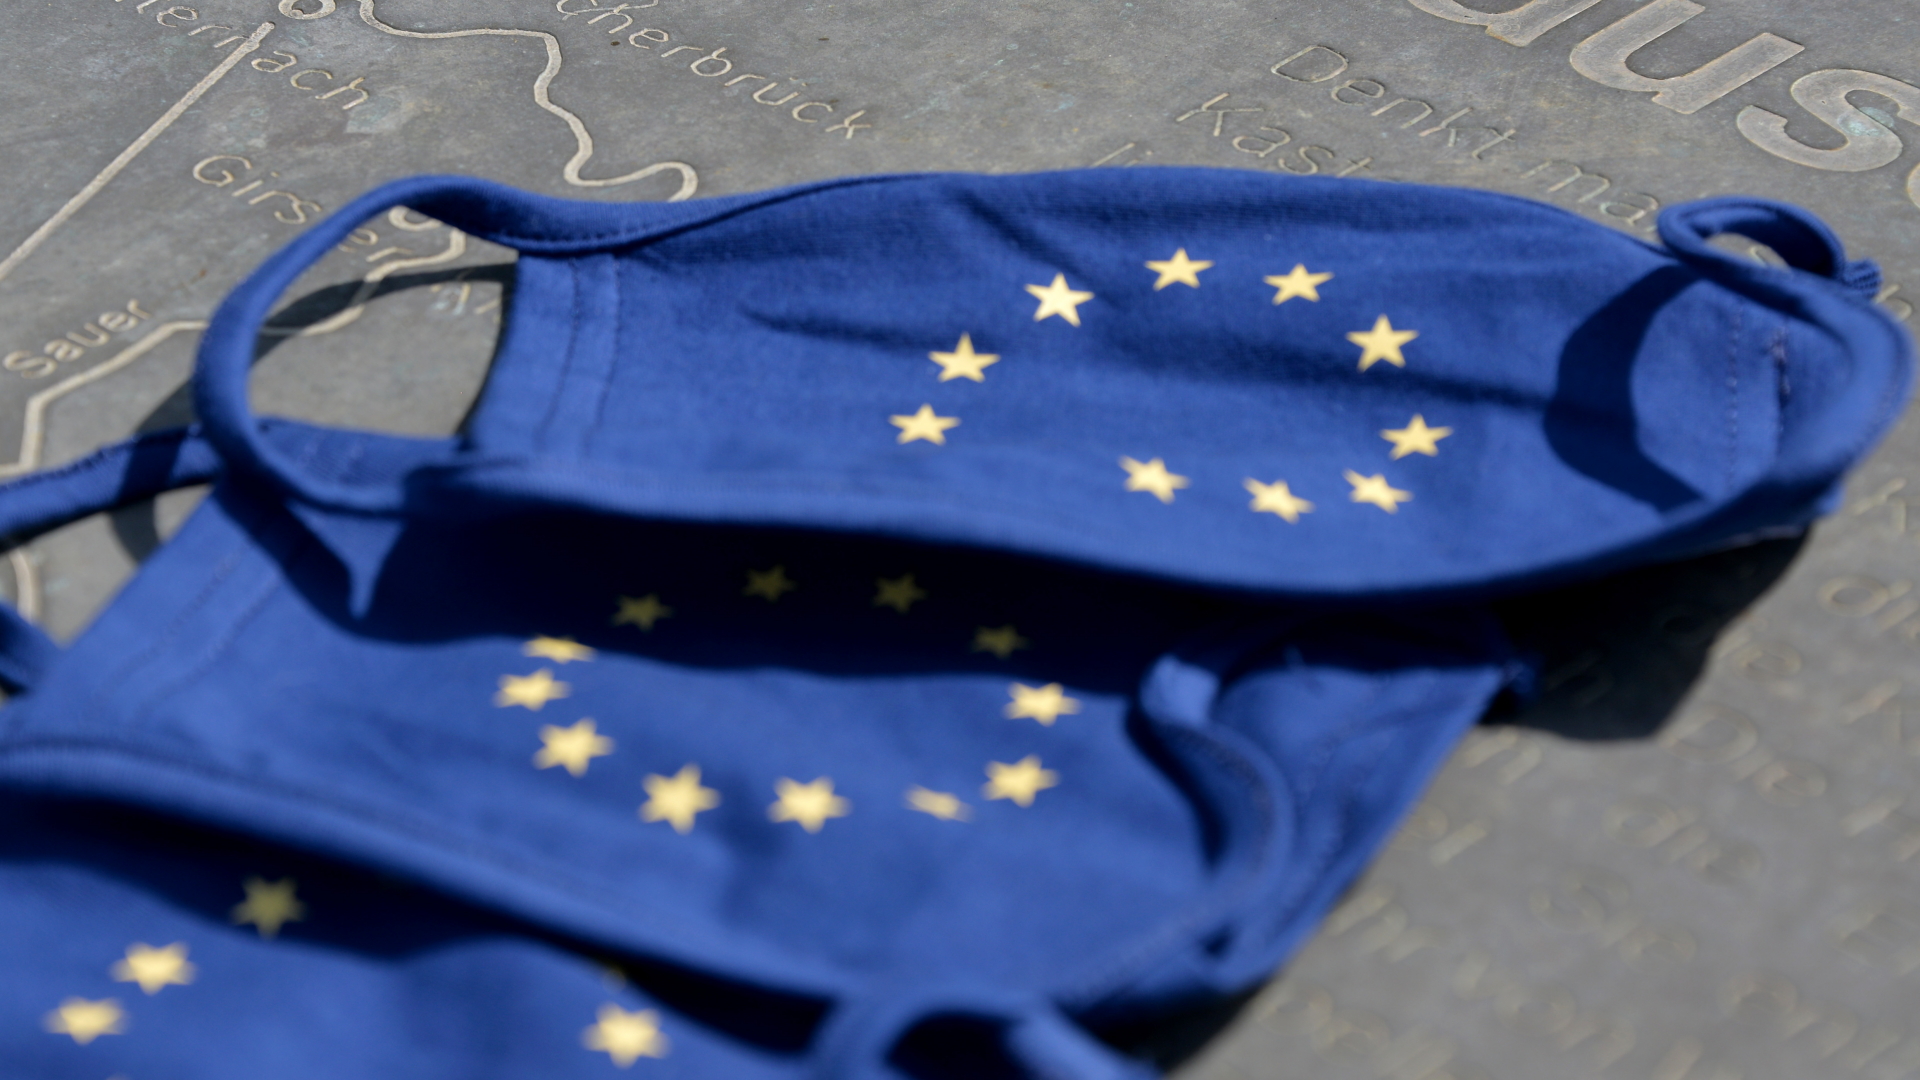 Blaue Mund- und Nasenschutzmasken mit dem Symbol der Europäischen Union, den Sternen im Kreis | dpa